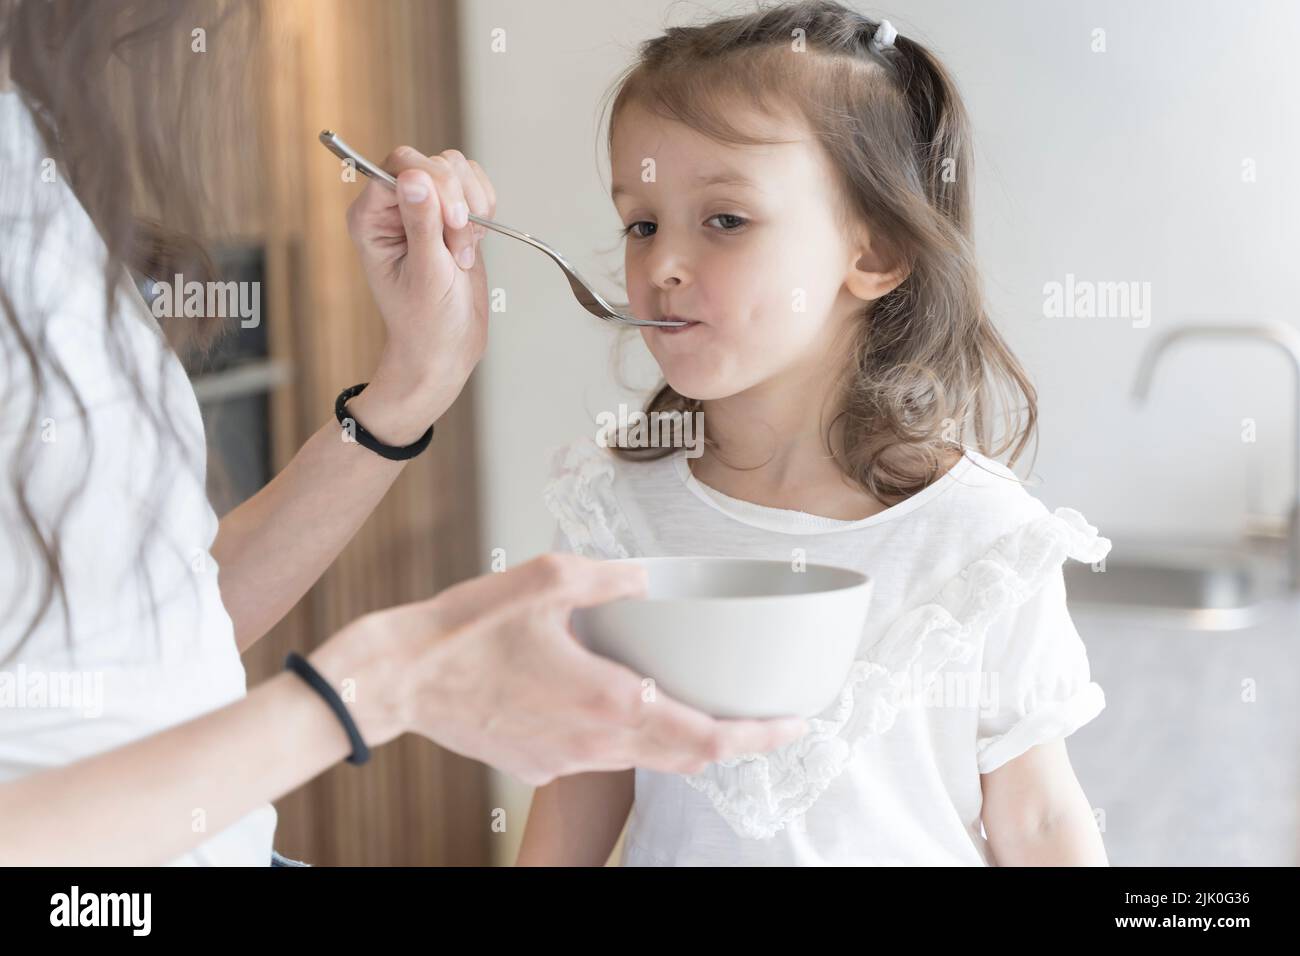 Mamá alimenta a su hija el desayuno en la cocina de la casa por la mañana. Concepto de comida para bebés, familia, cuidado. Fotografía de alta calidad Foto de stock